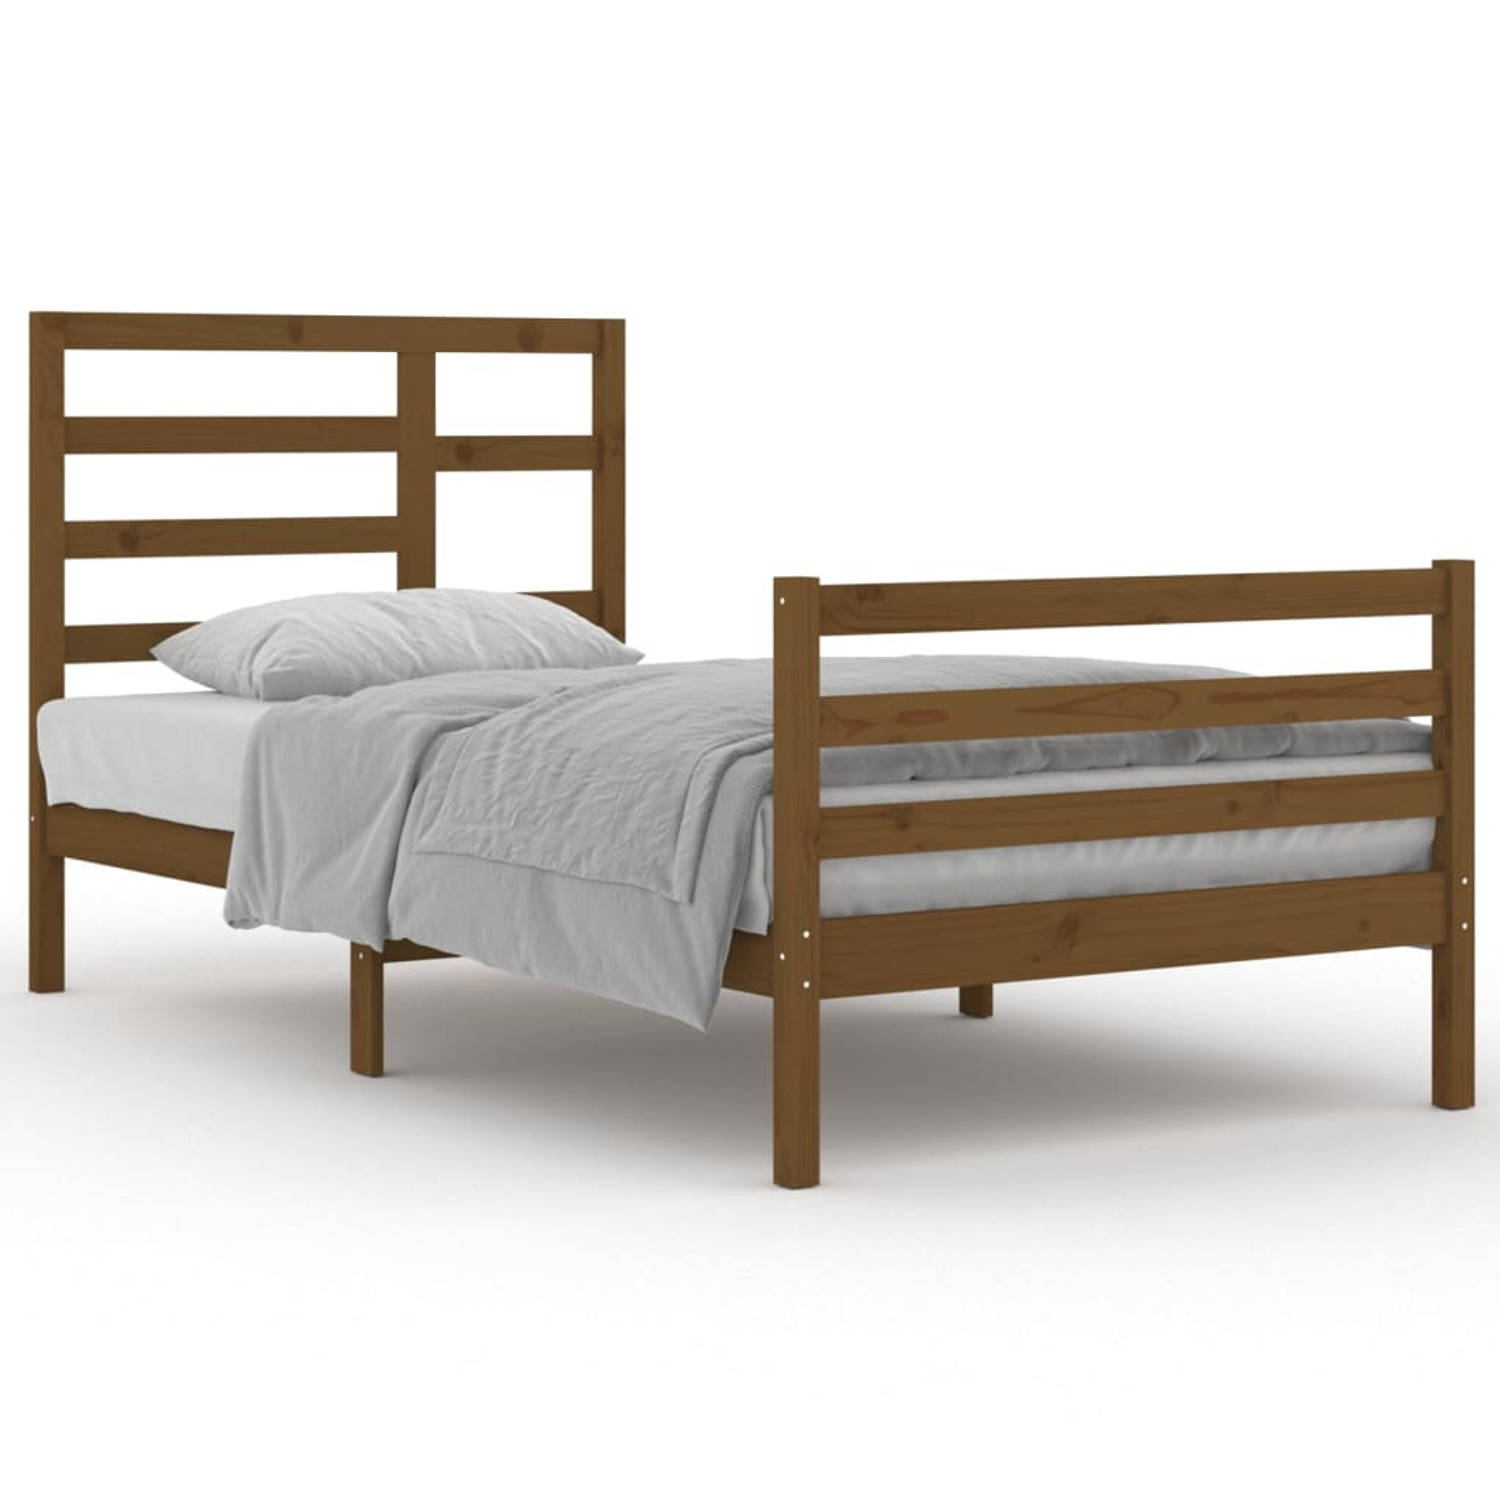 The Living Store Bedframe massief hout honingbruin 100x200 cm - Bedframe - Bedframes - Bed - Bedbodem - Ledikant - Bed Frame - Massief Houten Bedframe - Slaapmeubel - Eenpersoonsbe